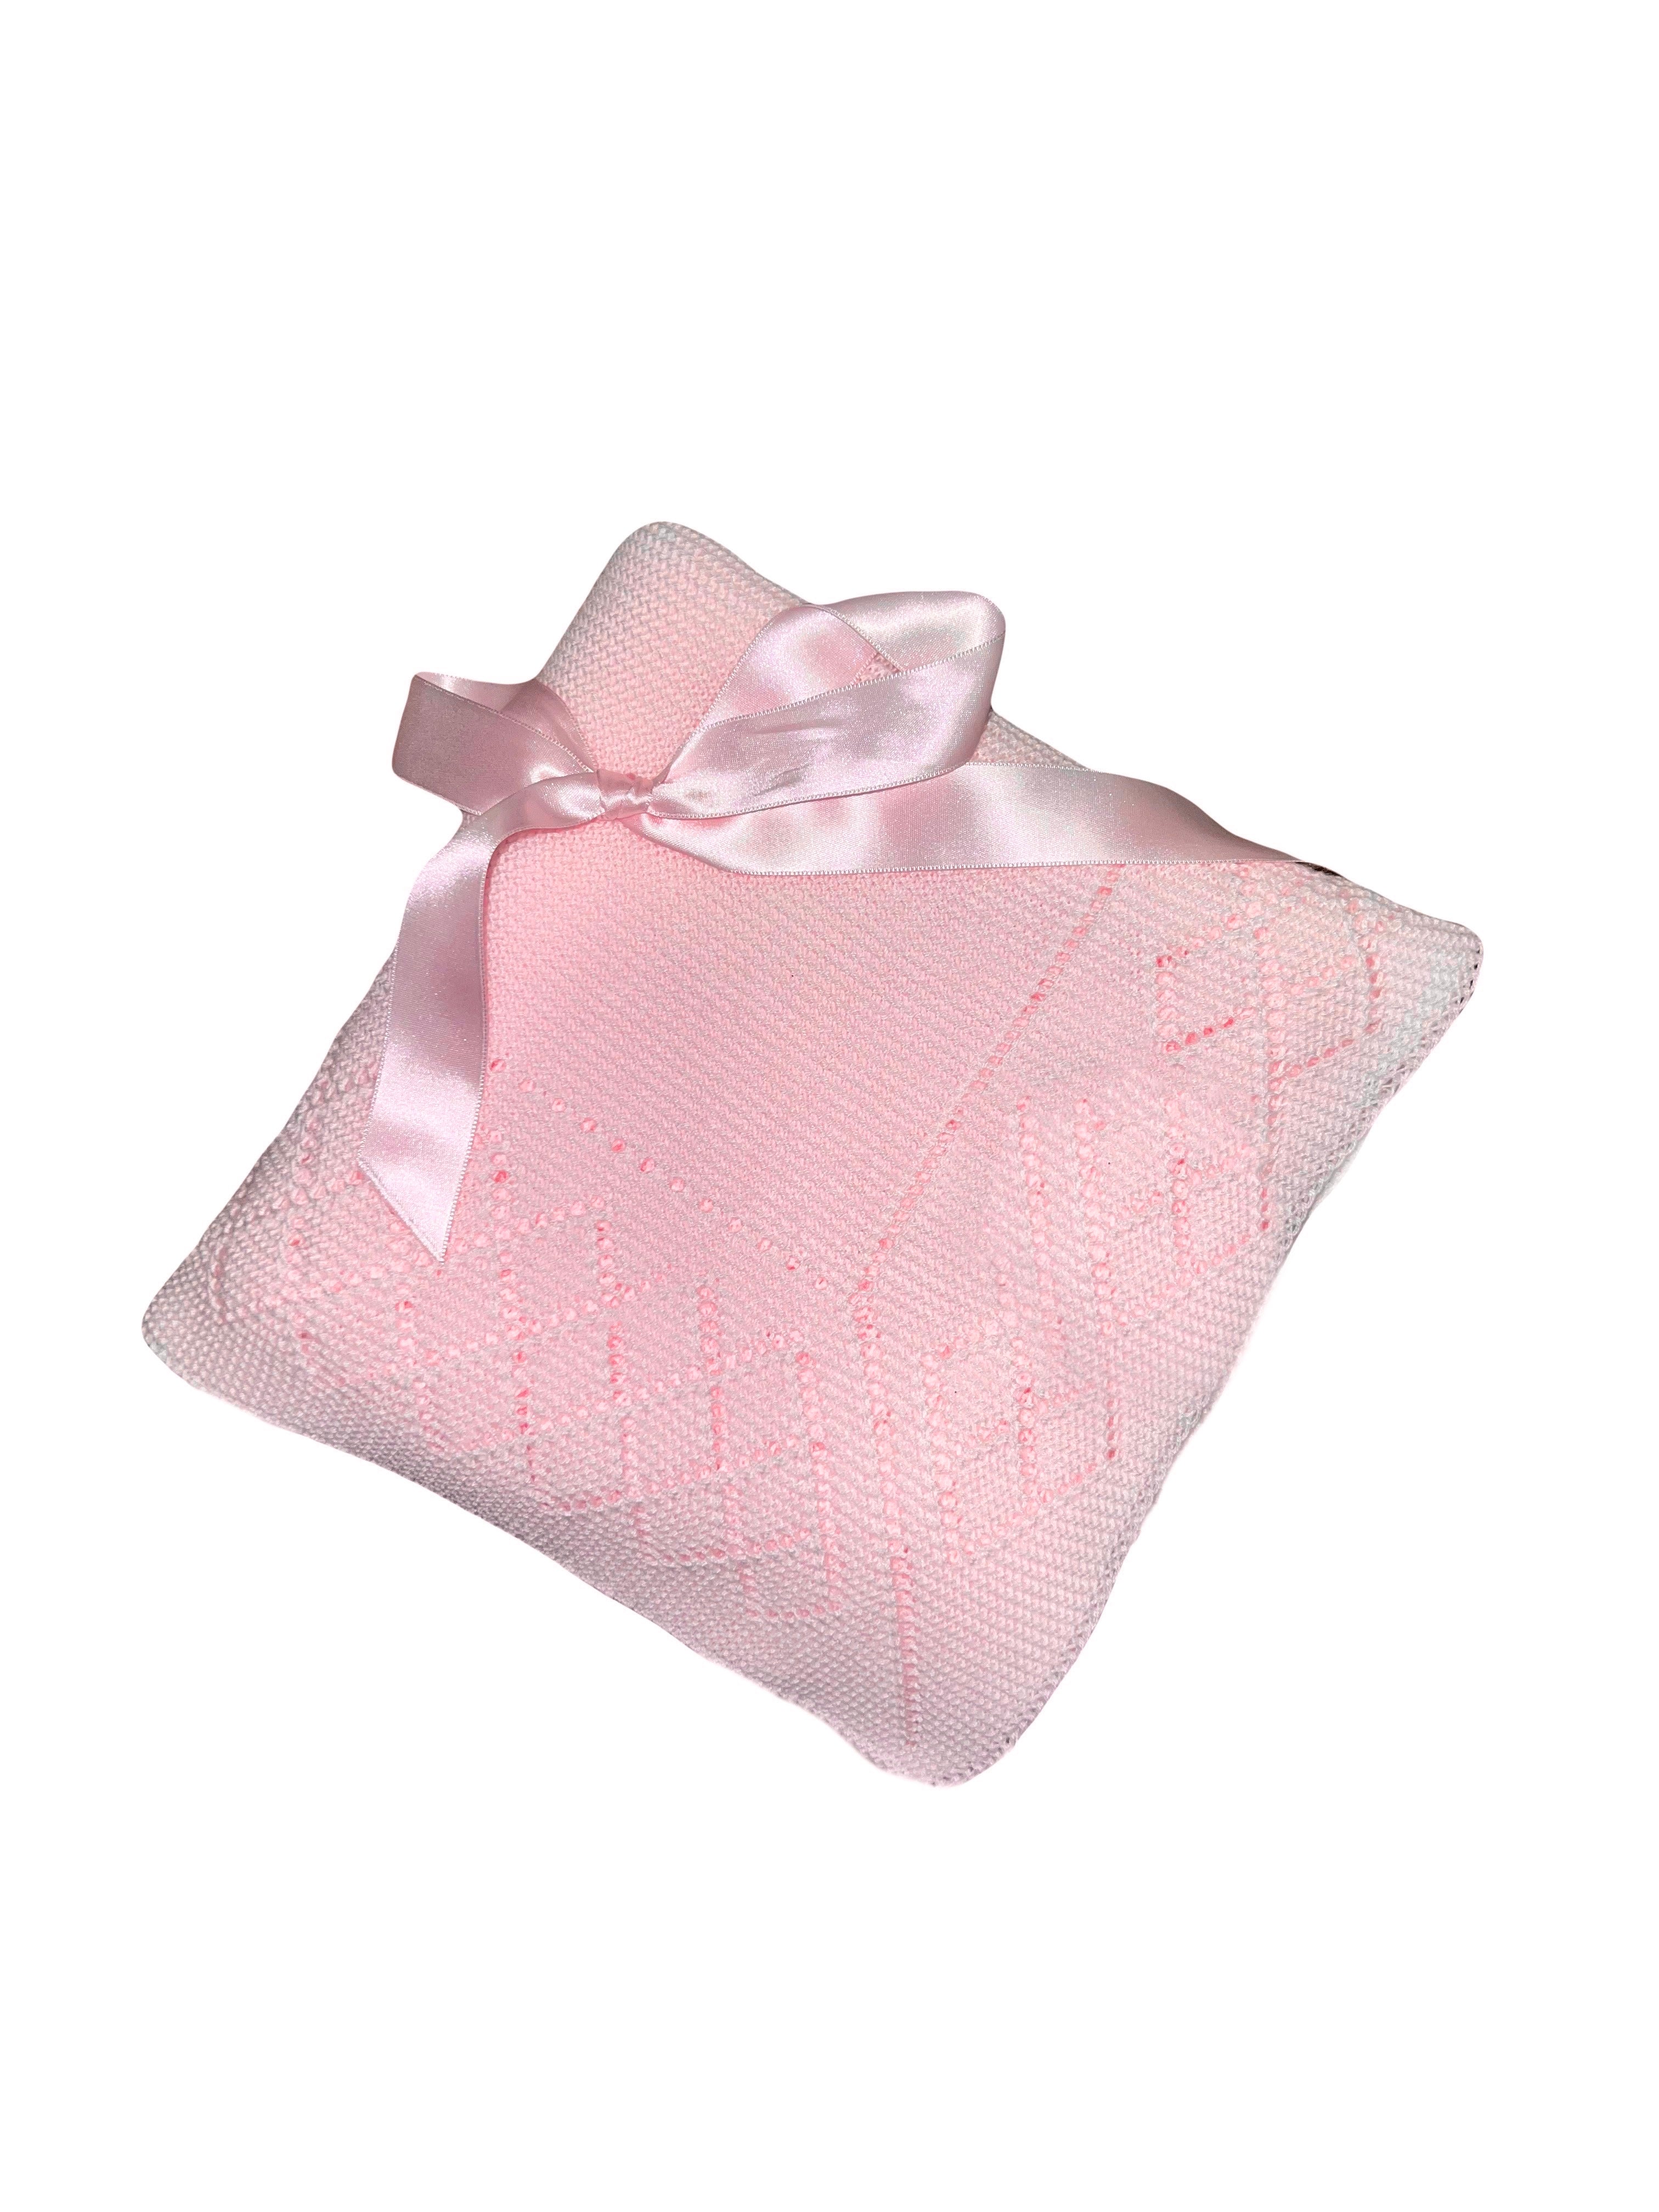 Light Pink Knit Blanket